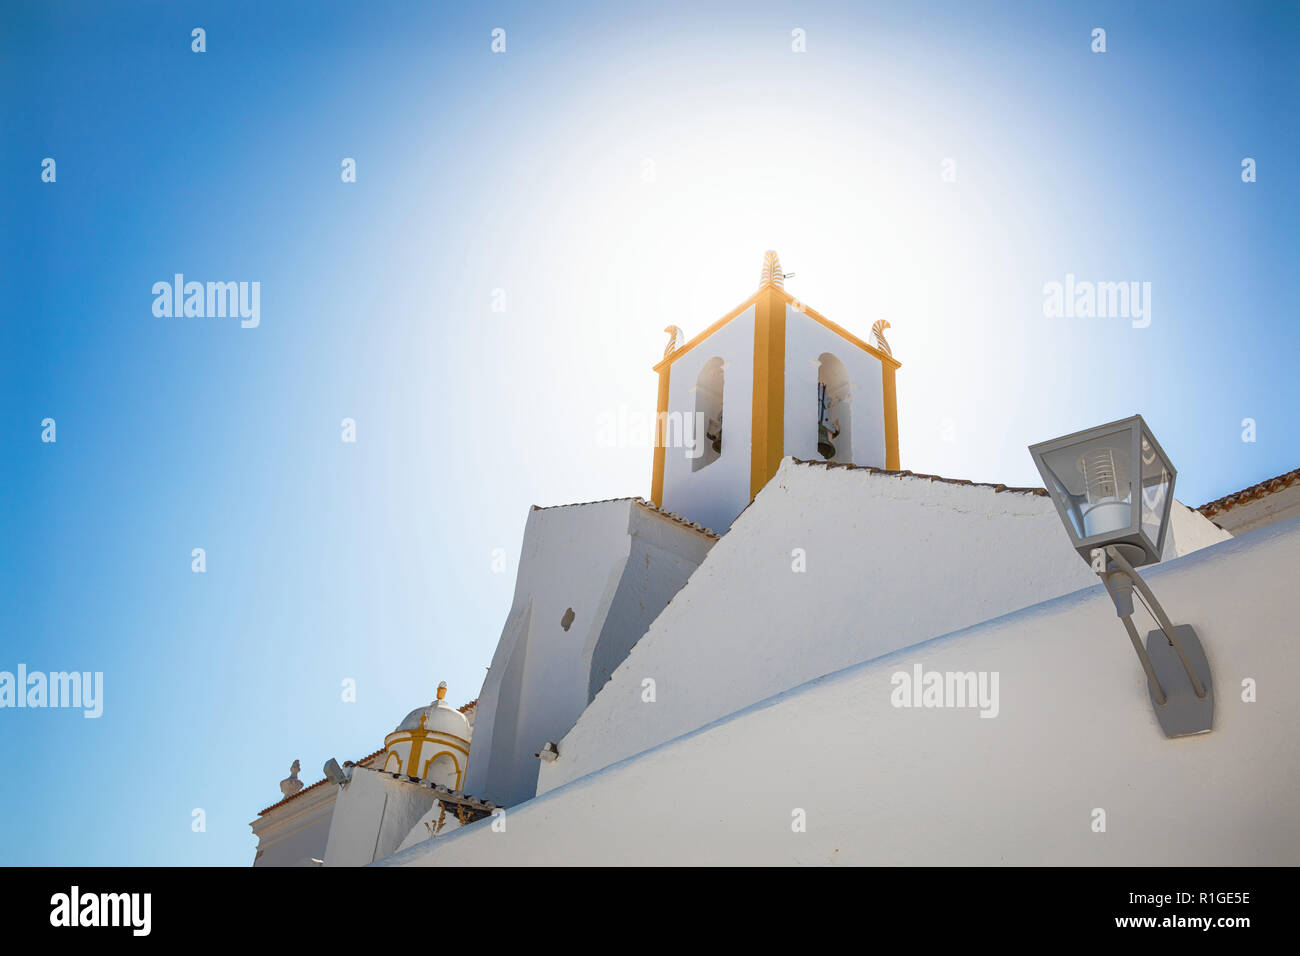 Church tower in Tavira, Algarve region, Portugal Stock Photo